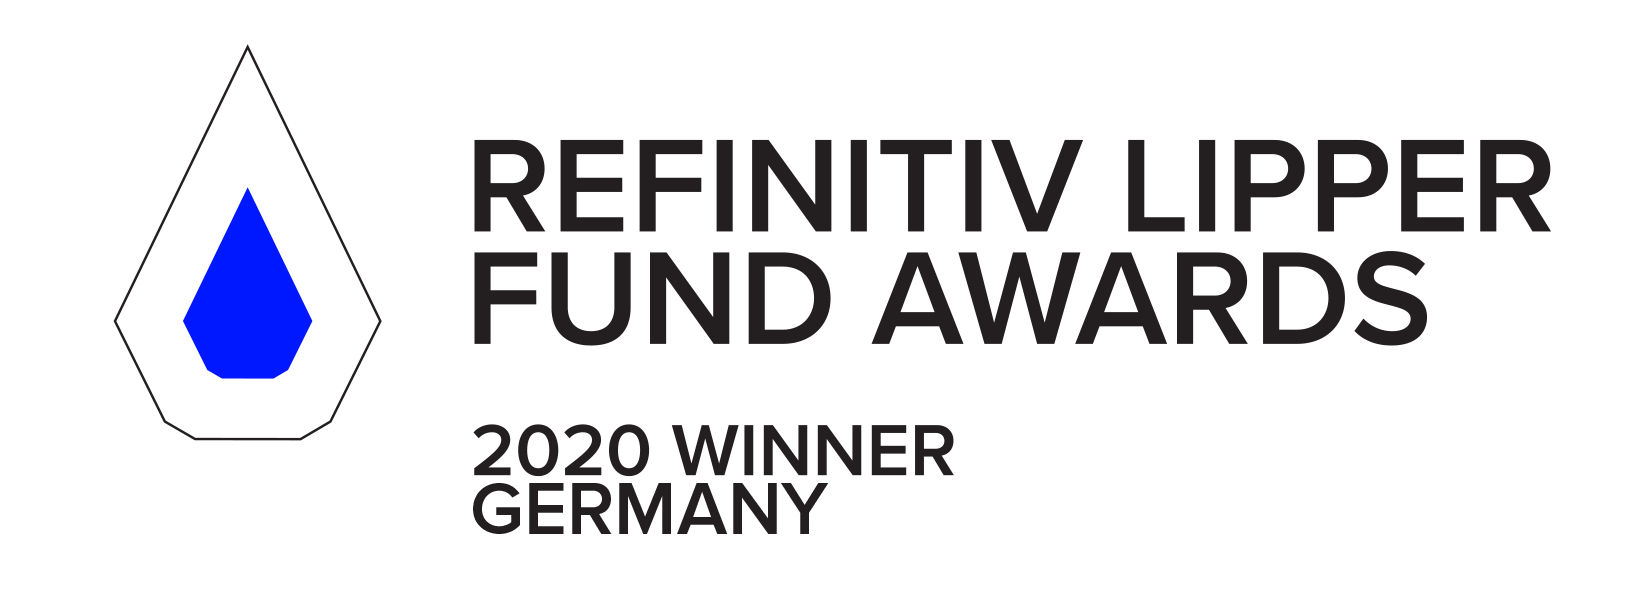 Lipper Award Germany 2020